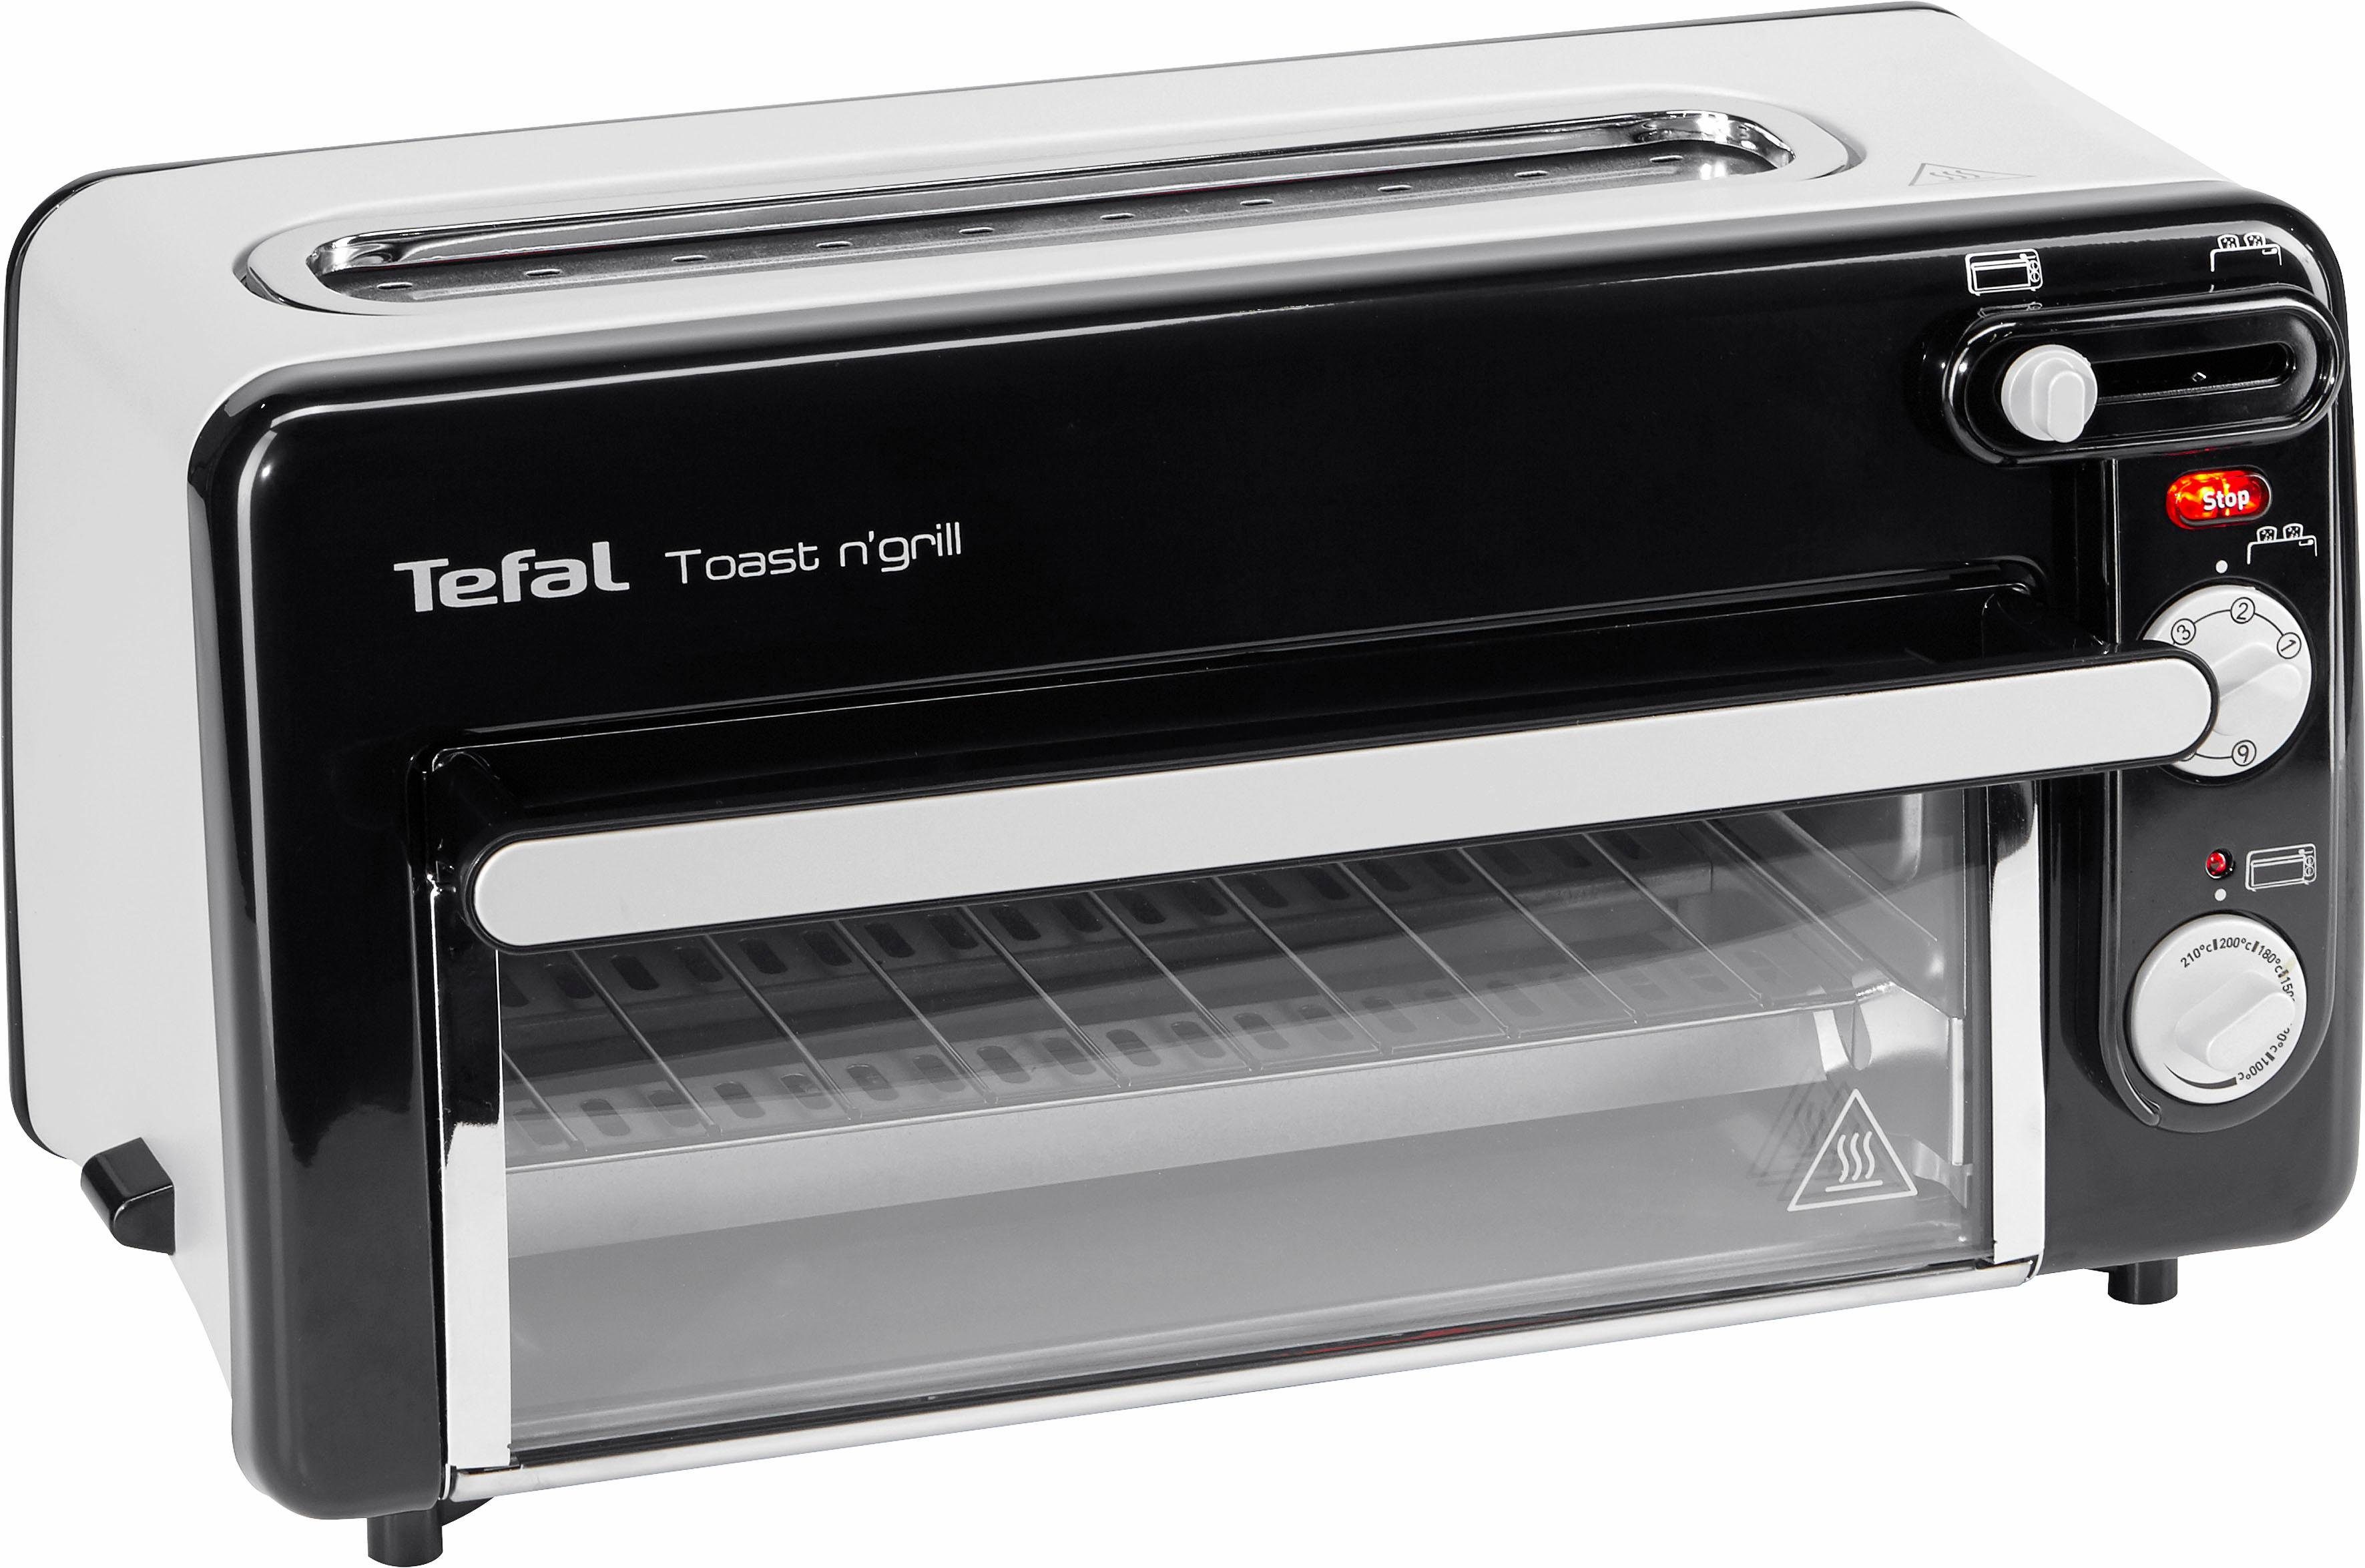 Tefal Minibackofen TL6008 Toast n' Grill, sehr energieeffizient und  schnell, 1300 Watt, Sehr energieeffizient und schnell - ohne Vorheizen -  Energieersparnis bis zu 75%